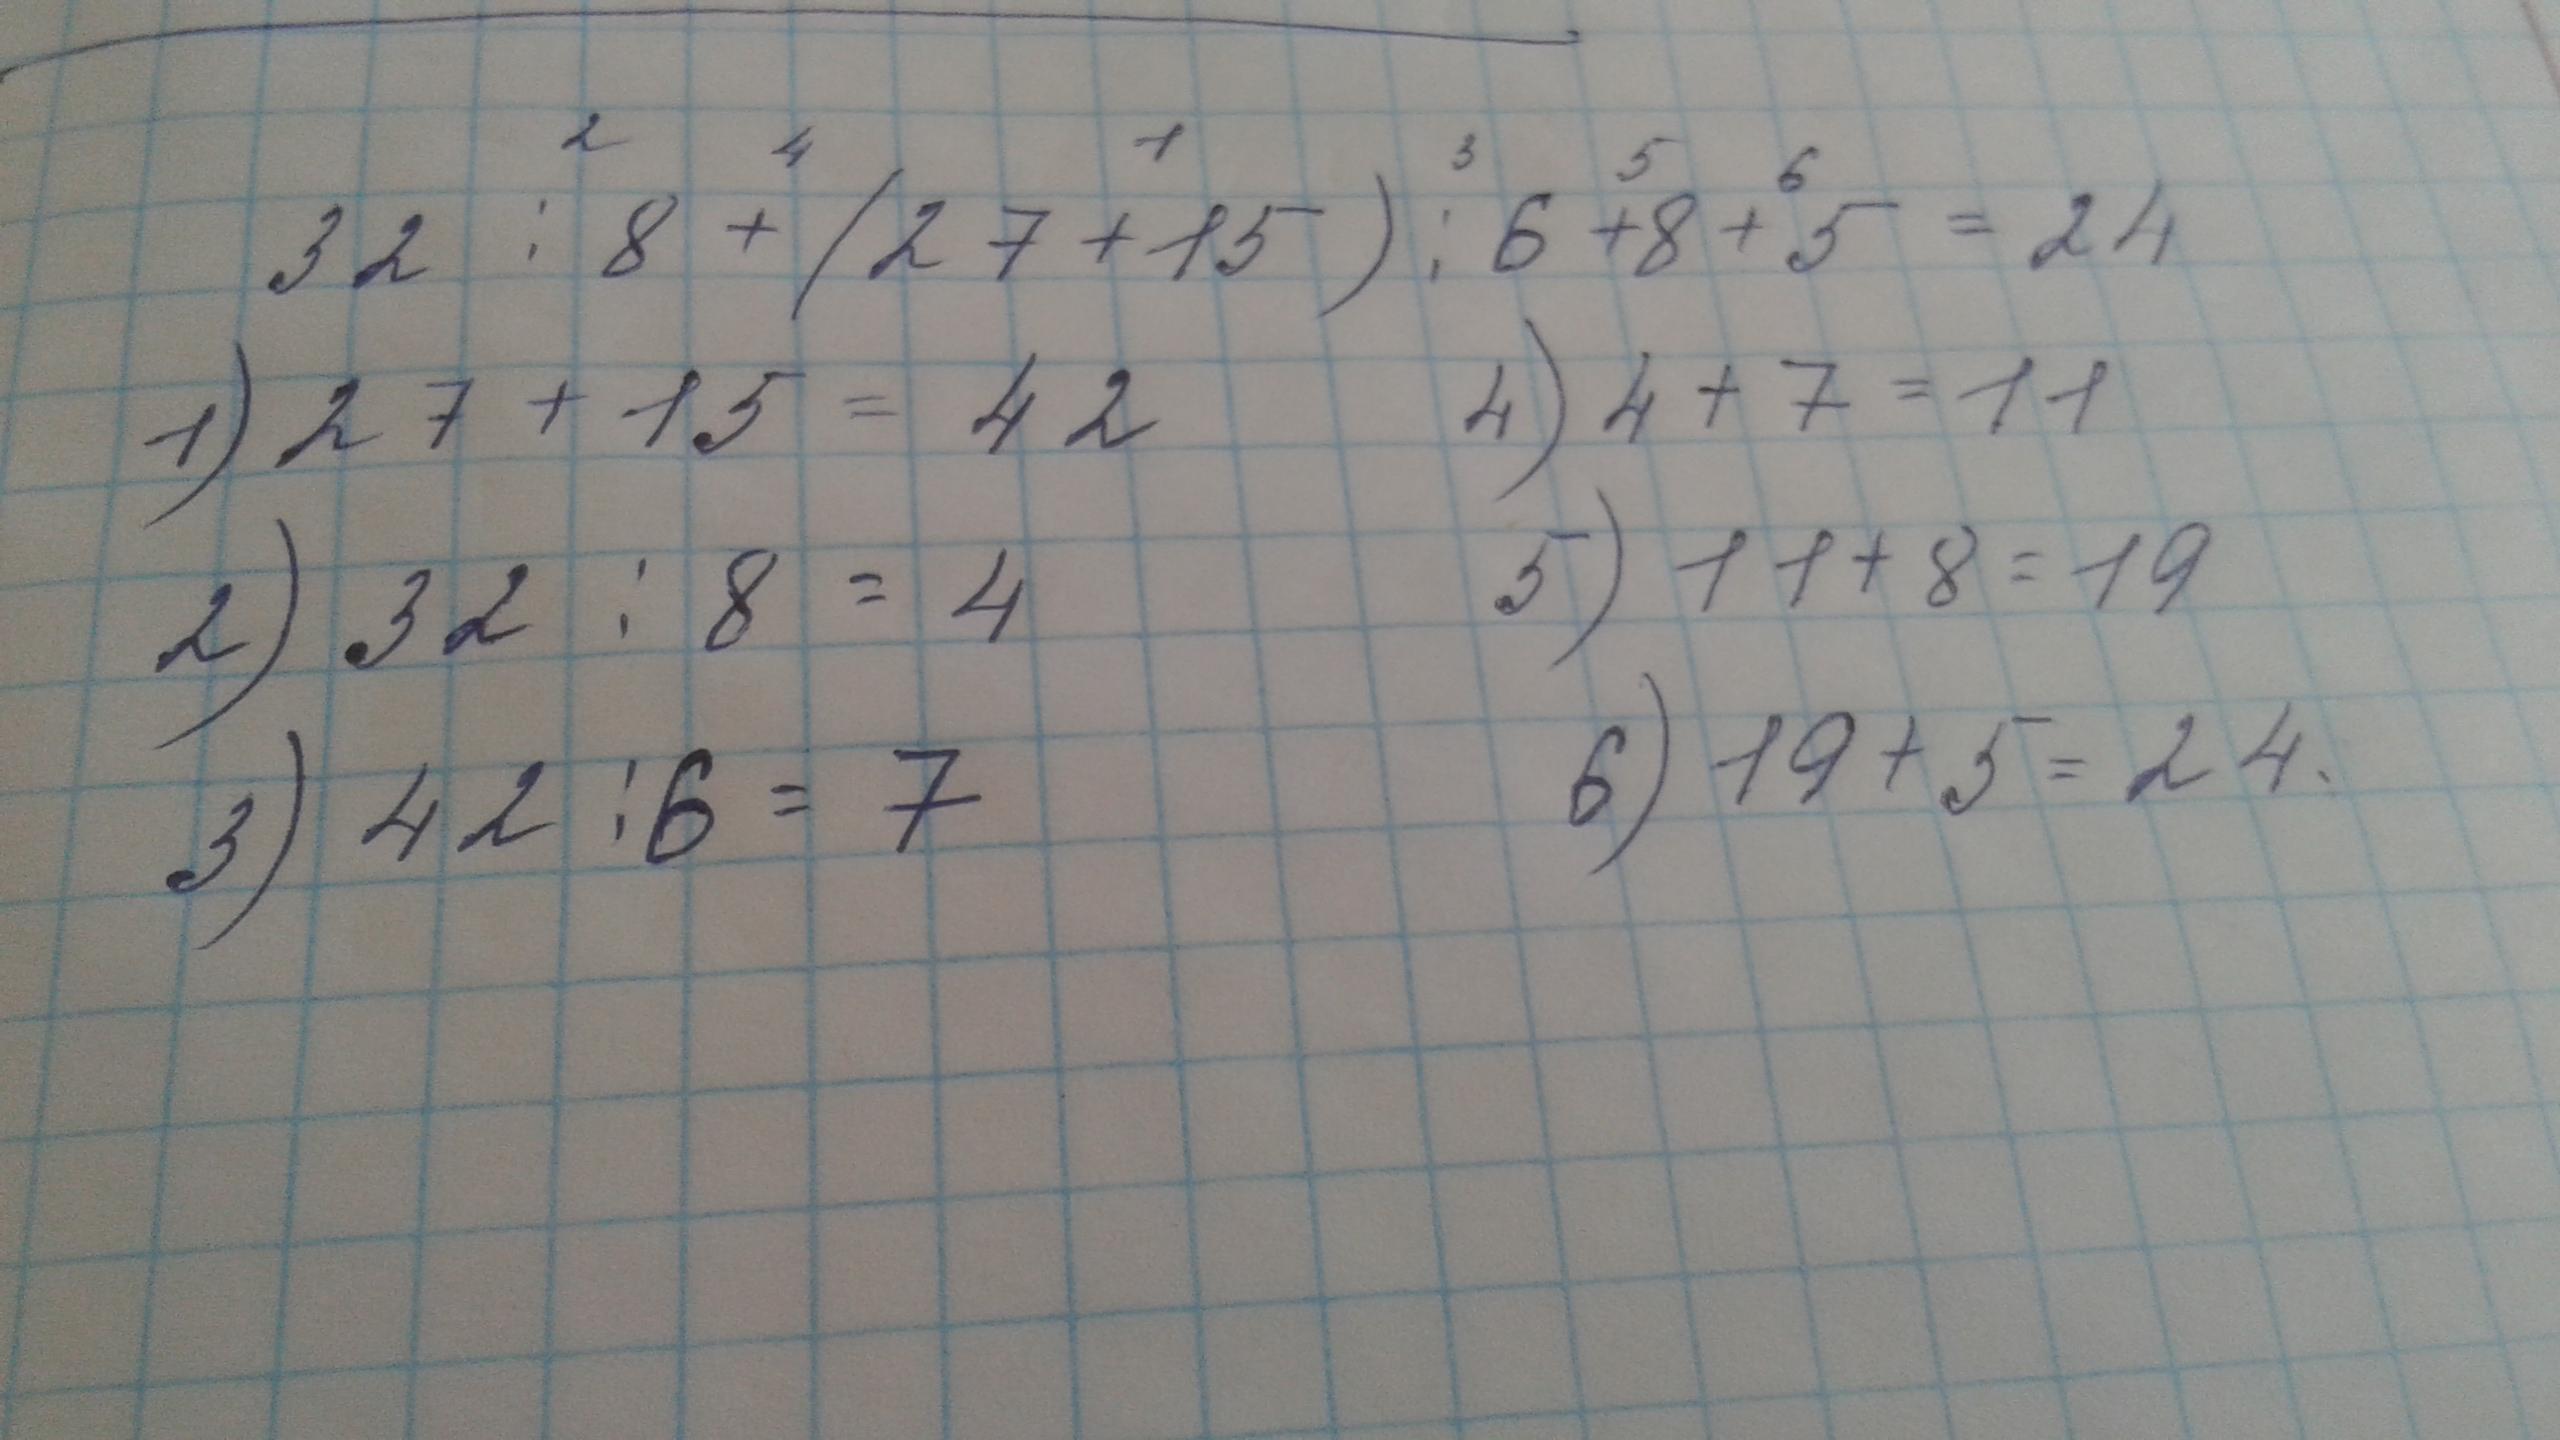 15 04 32. 32:8+(27+15):6+8*5. -7/8+(-5 1/6). -32,08+(-6 2/5)+(-6 3/4) Ответ. -6,8+(-6,8) +(-7,4).